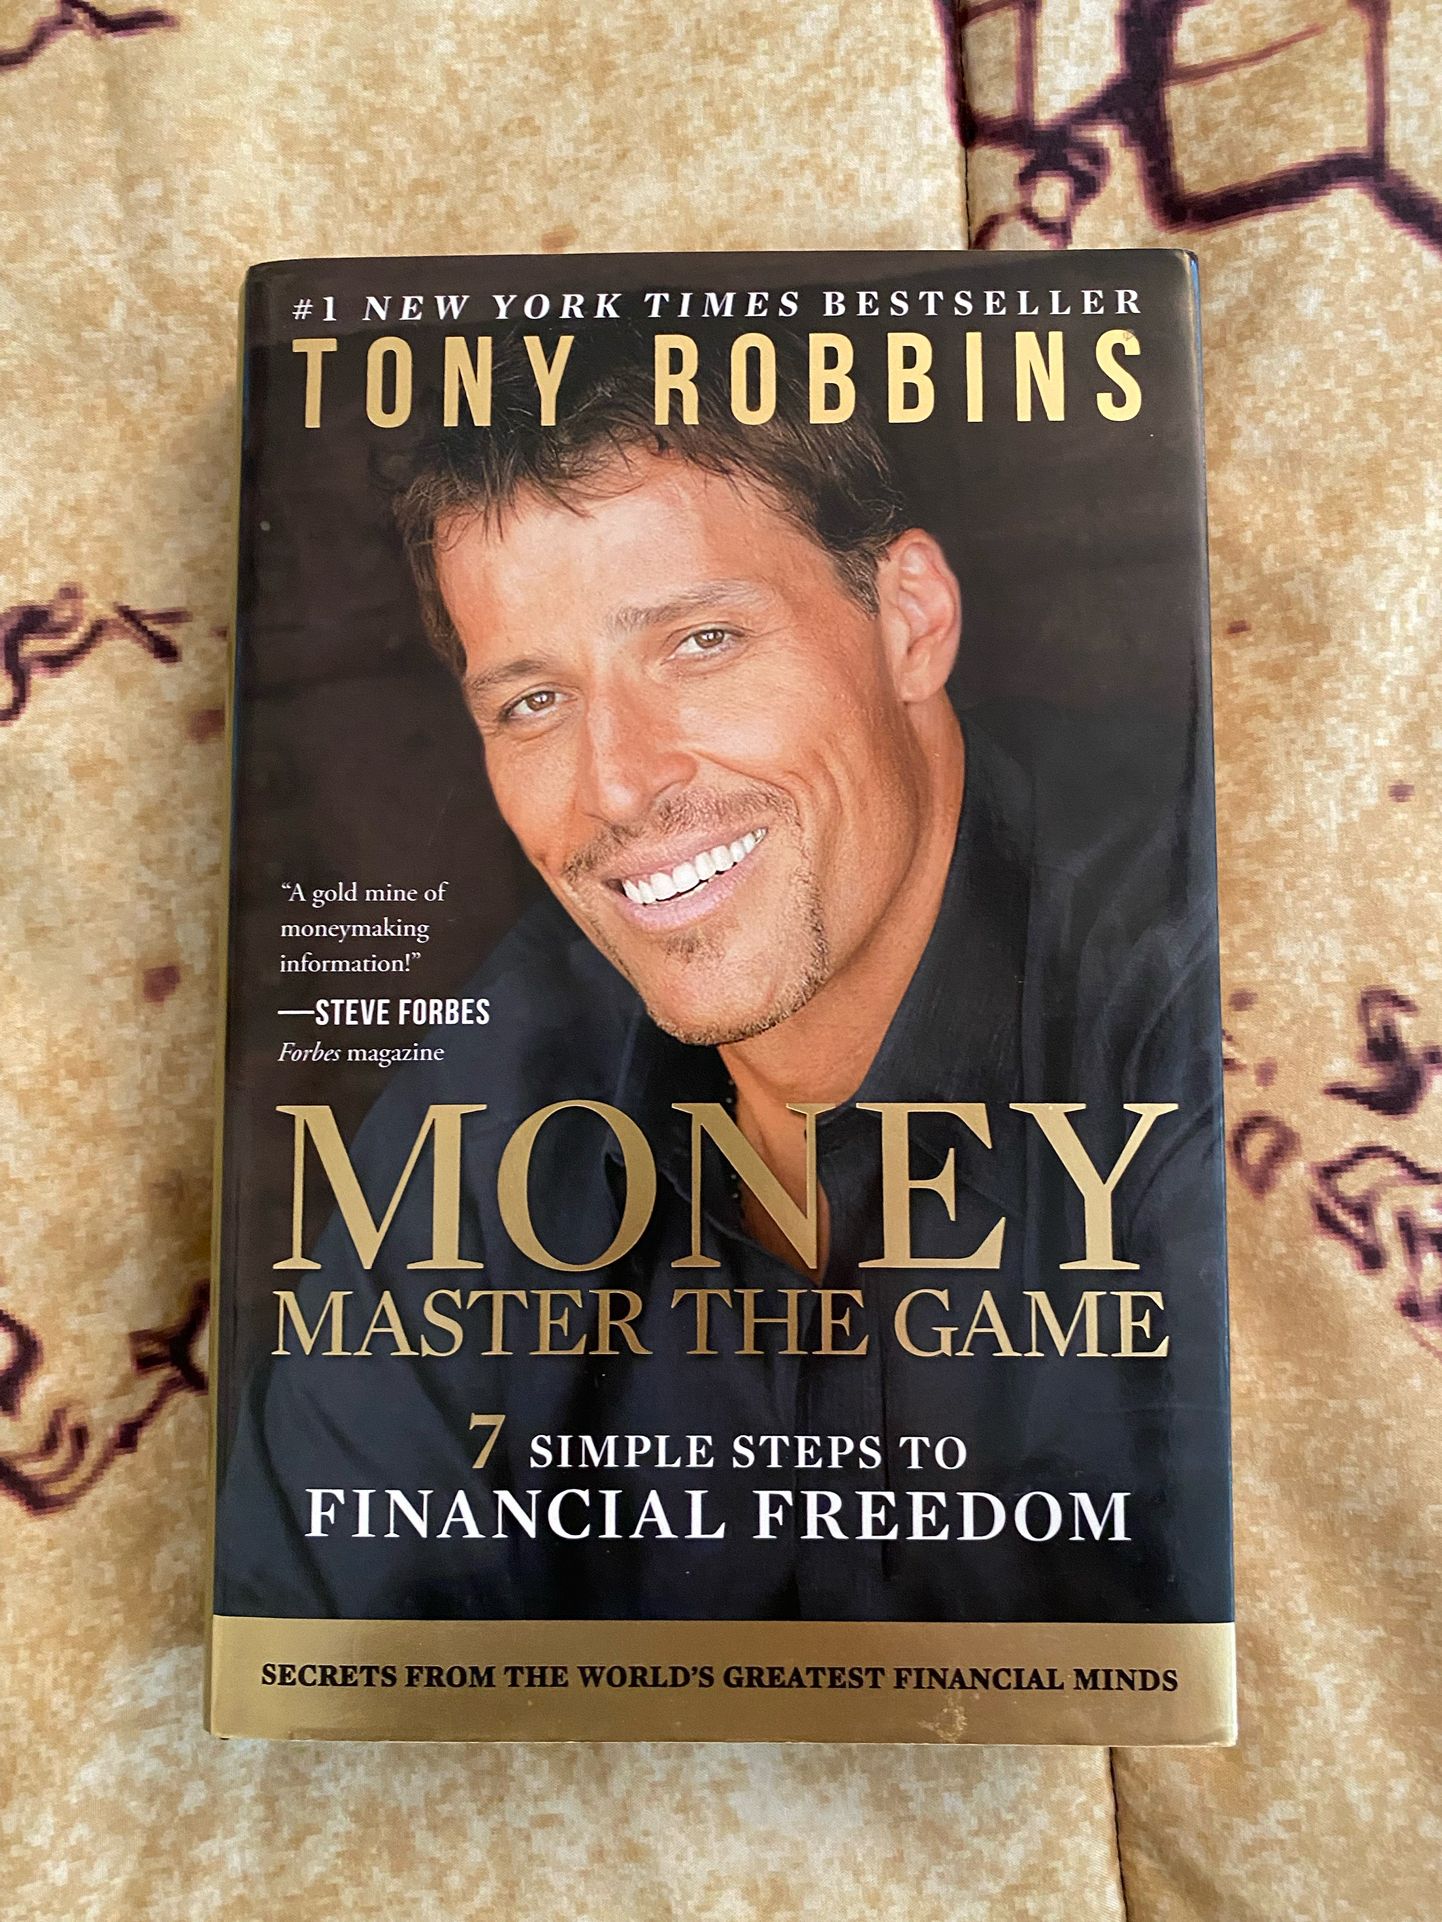 Tony Robbins Book